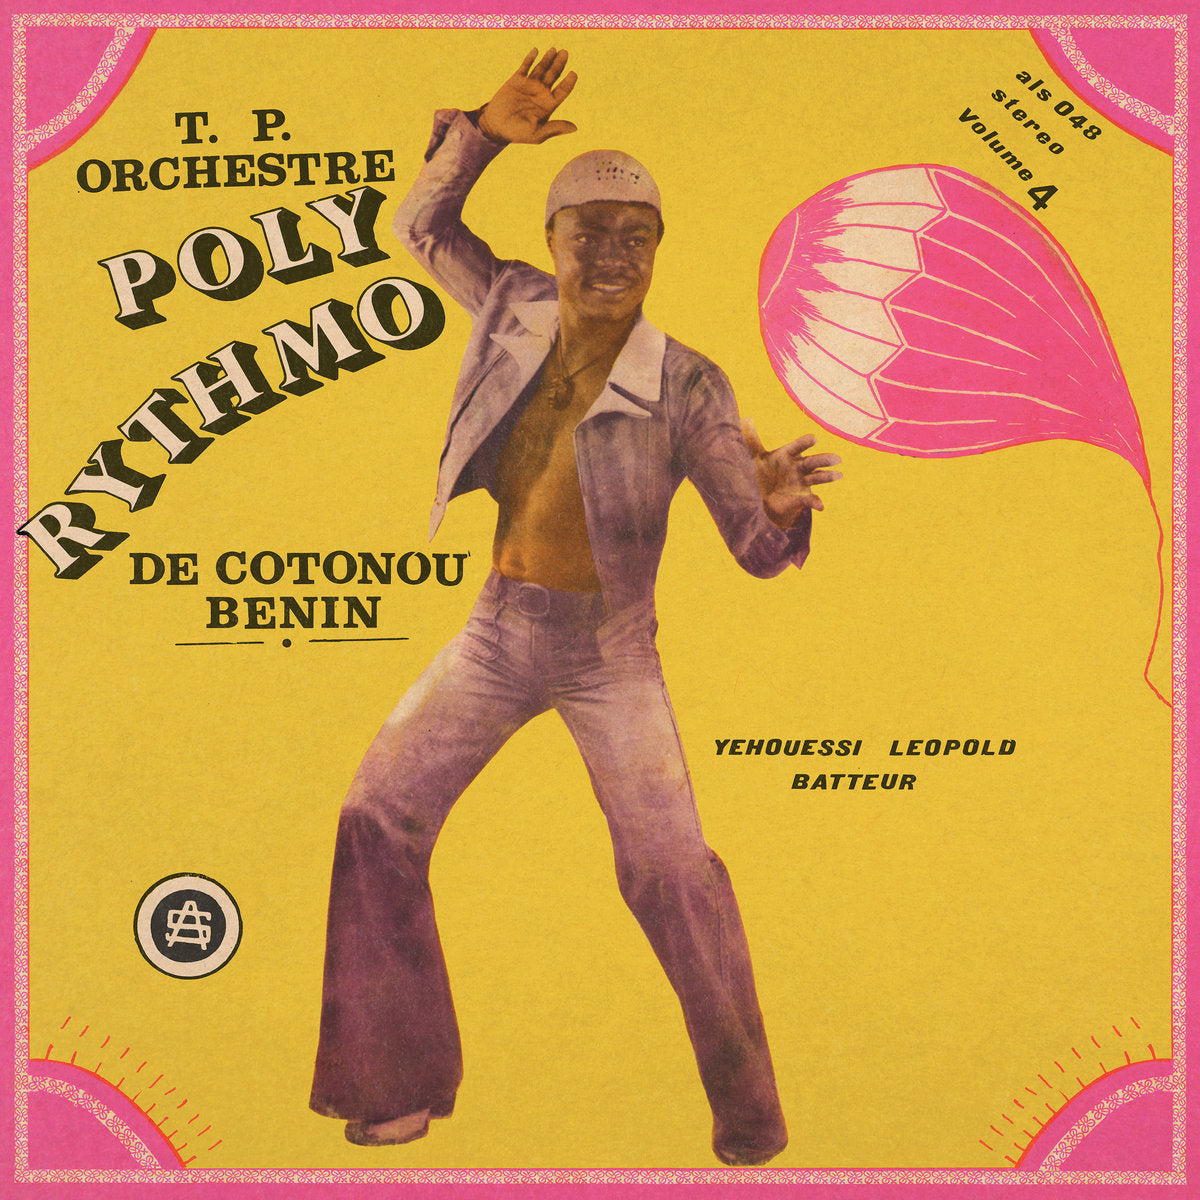 T.P. ORCHESTRE POLY RYTHMO DE COTONOU - BENIN: Vol. 4 – Yehouessi Leopold Batteur - LP - Vinyl